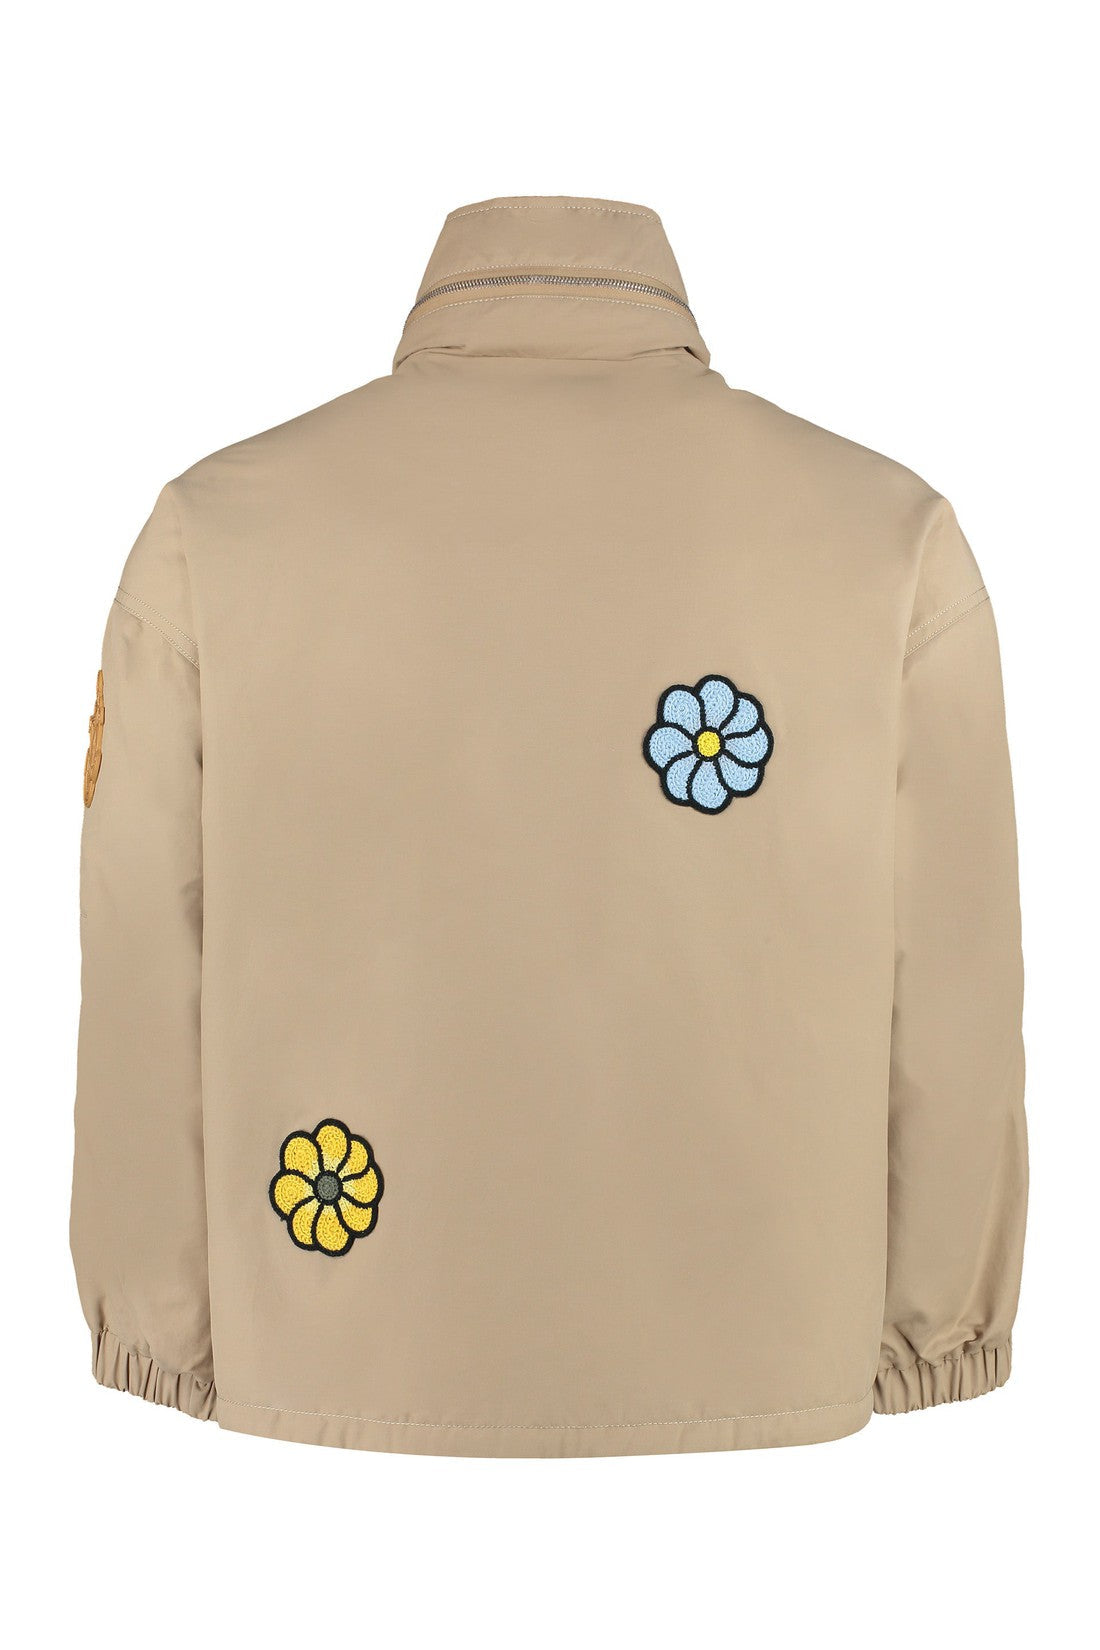 Moncler Genius-OUTLET-SALE-1 Moncler x JW Anderson - Delamont jacket with decorations-ARCHIVIST